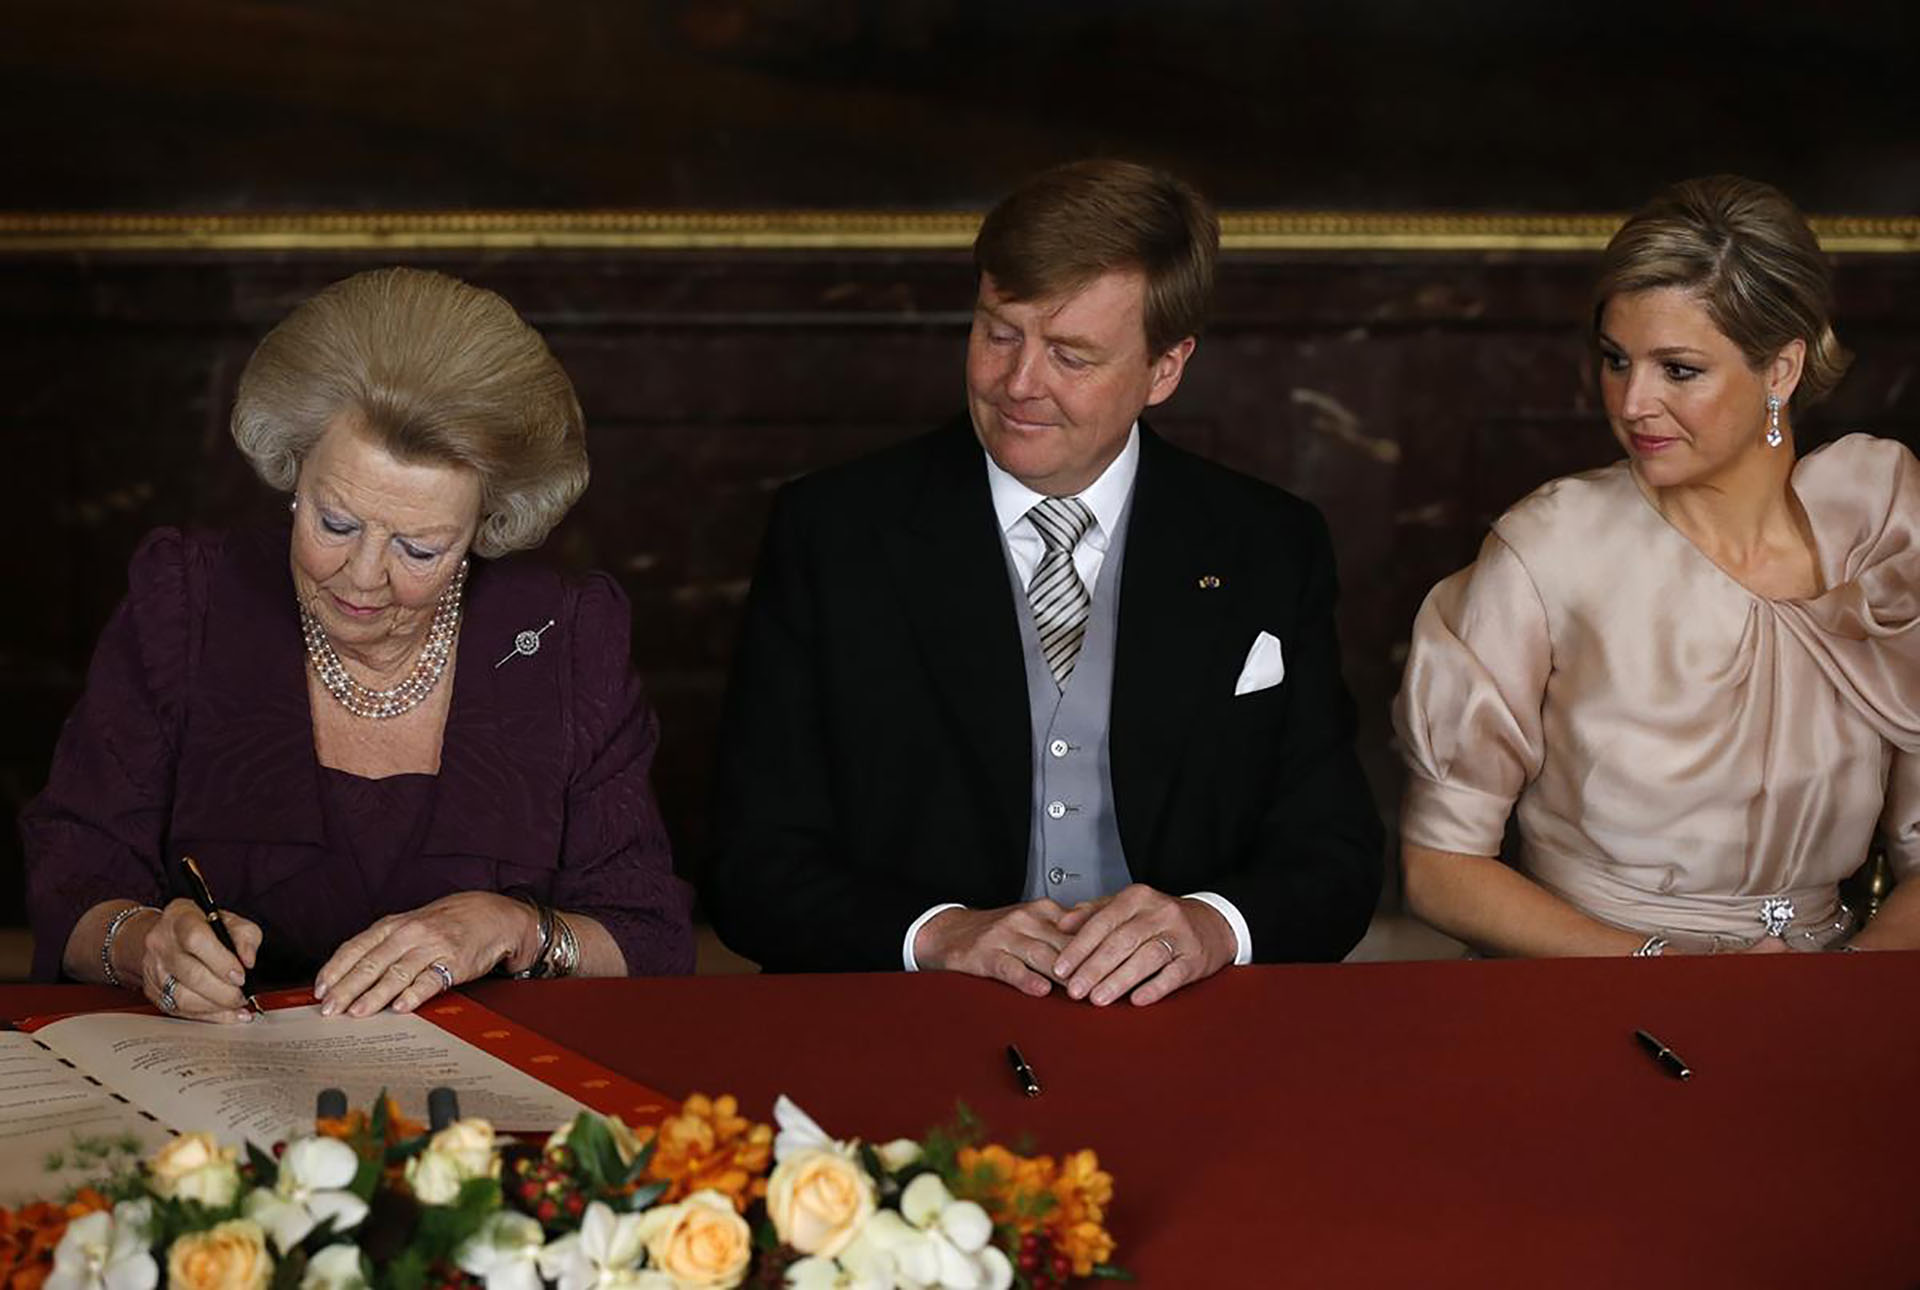 El 30 de abril de 2013, la reina Beatriz de Holanda decidió abdicar en favor de su hijo, Guillermo, en una emotiva ceremonia que se llevó a cabo en el Palacio Real de Ámsterdam 